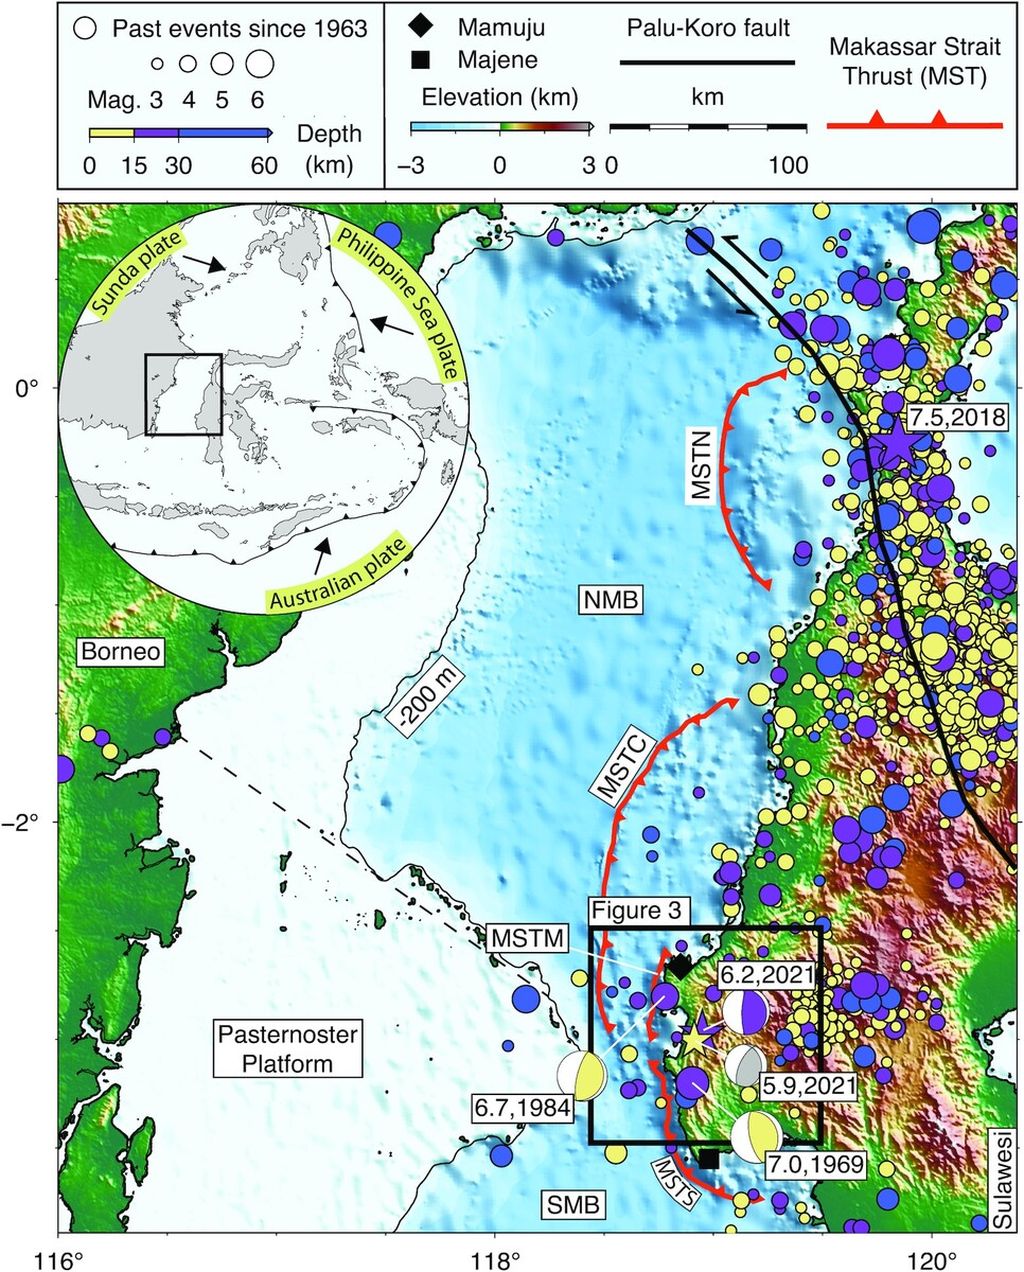 Gempa Mamuju M 6,2 pada 15 Januari 2021 terjadi di dekat sistem patahan aktif dan didahului oleh kejadian pendahuluan, yang terbesar adalah gempa M 5,9. Sumber: Irwan Meilano, dkk (<i>Geophysical Journal International</i>, 2023) 